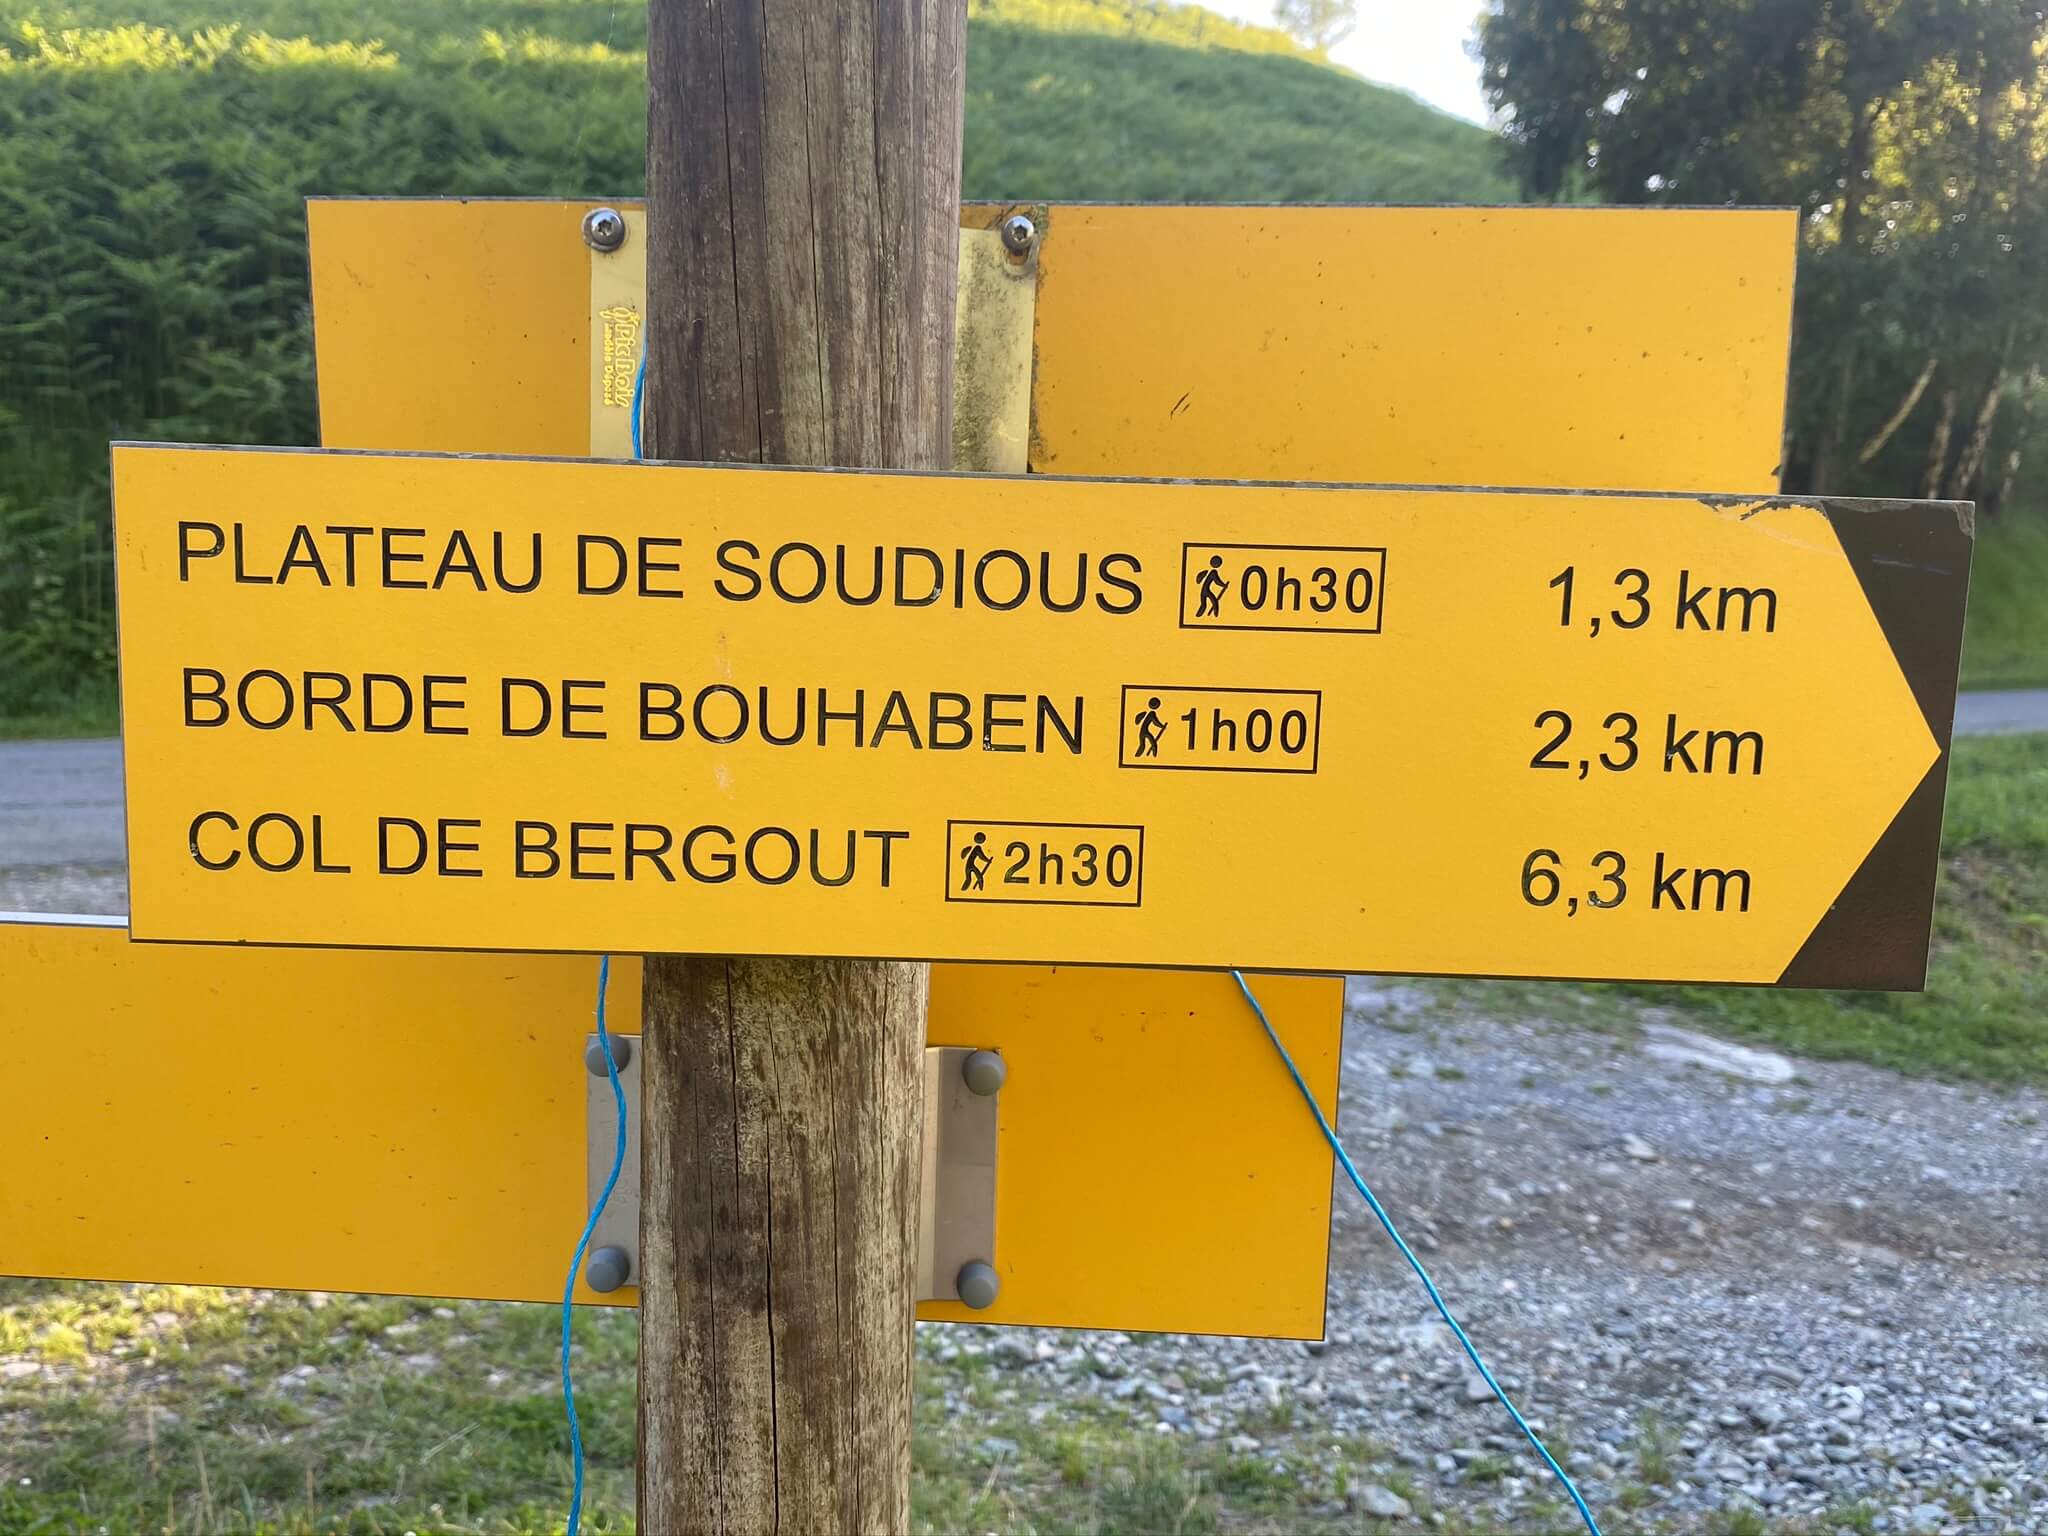 Si vous souhaitez prolonger votre balade, grimpez au col de Bergout, d'où décollent les parapentistes